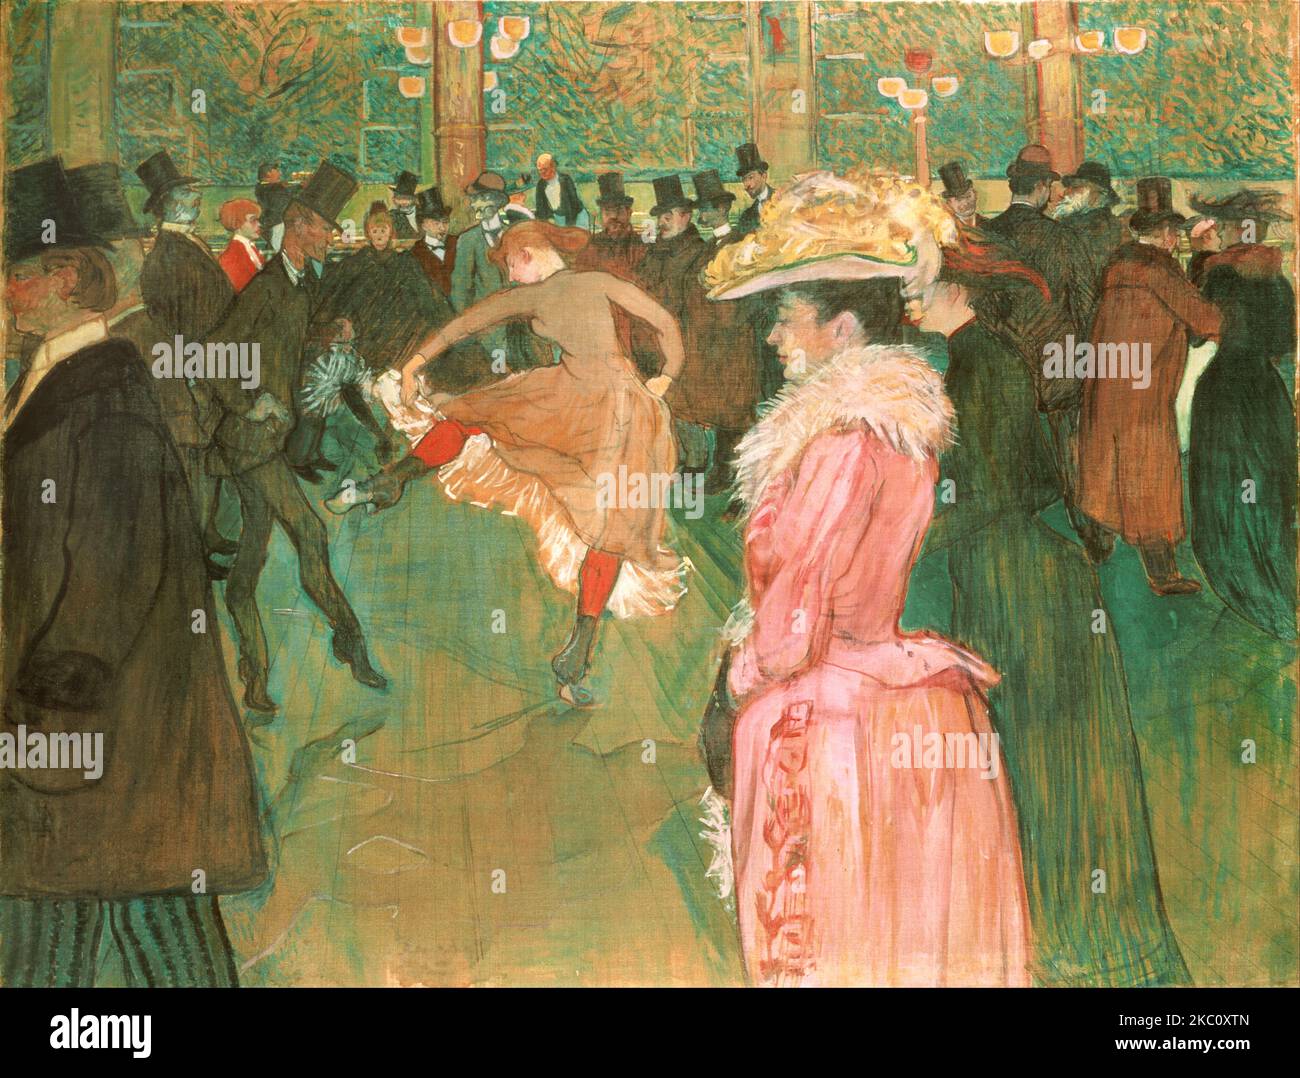 Henri de Toulouse-Lautrec - At the Moulin Rouge, The Dance - 1890 Stock Photo